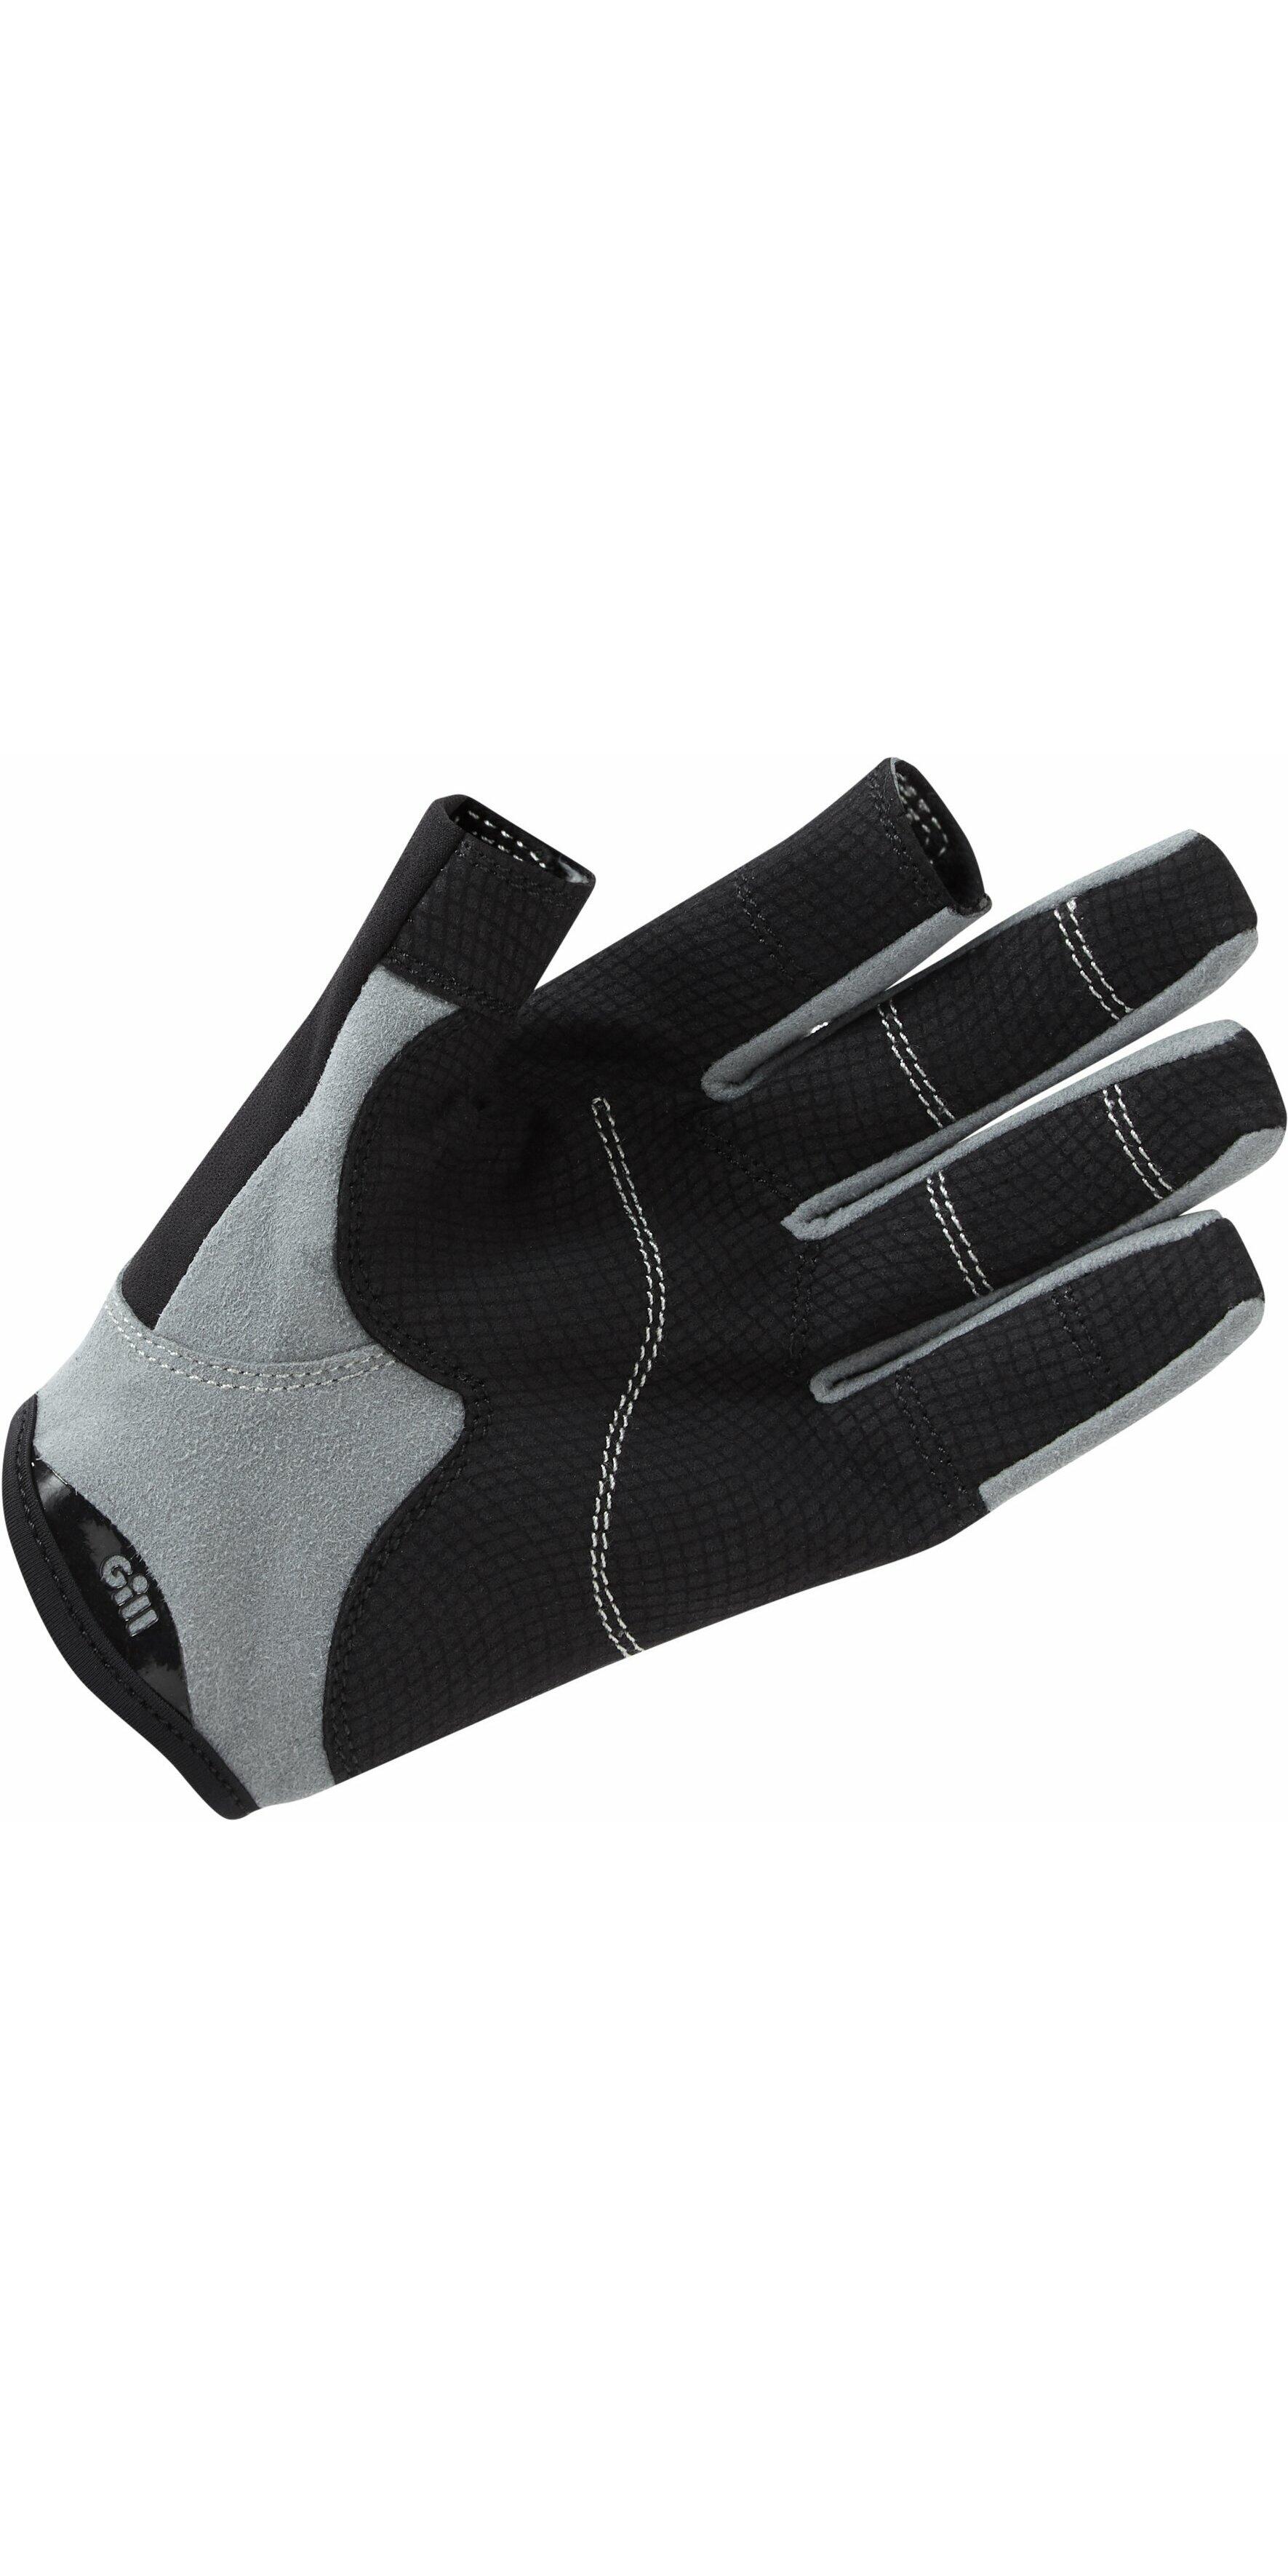 Deckhand Long Finger Gloves 2/7